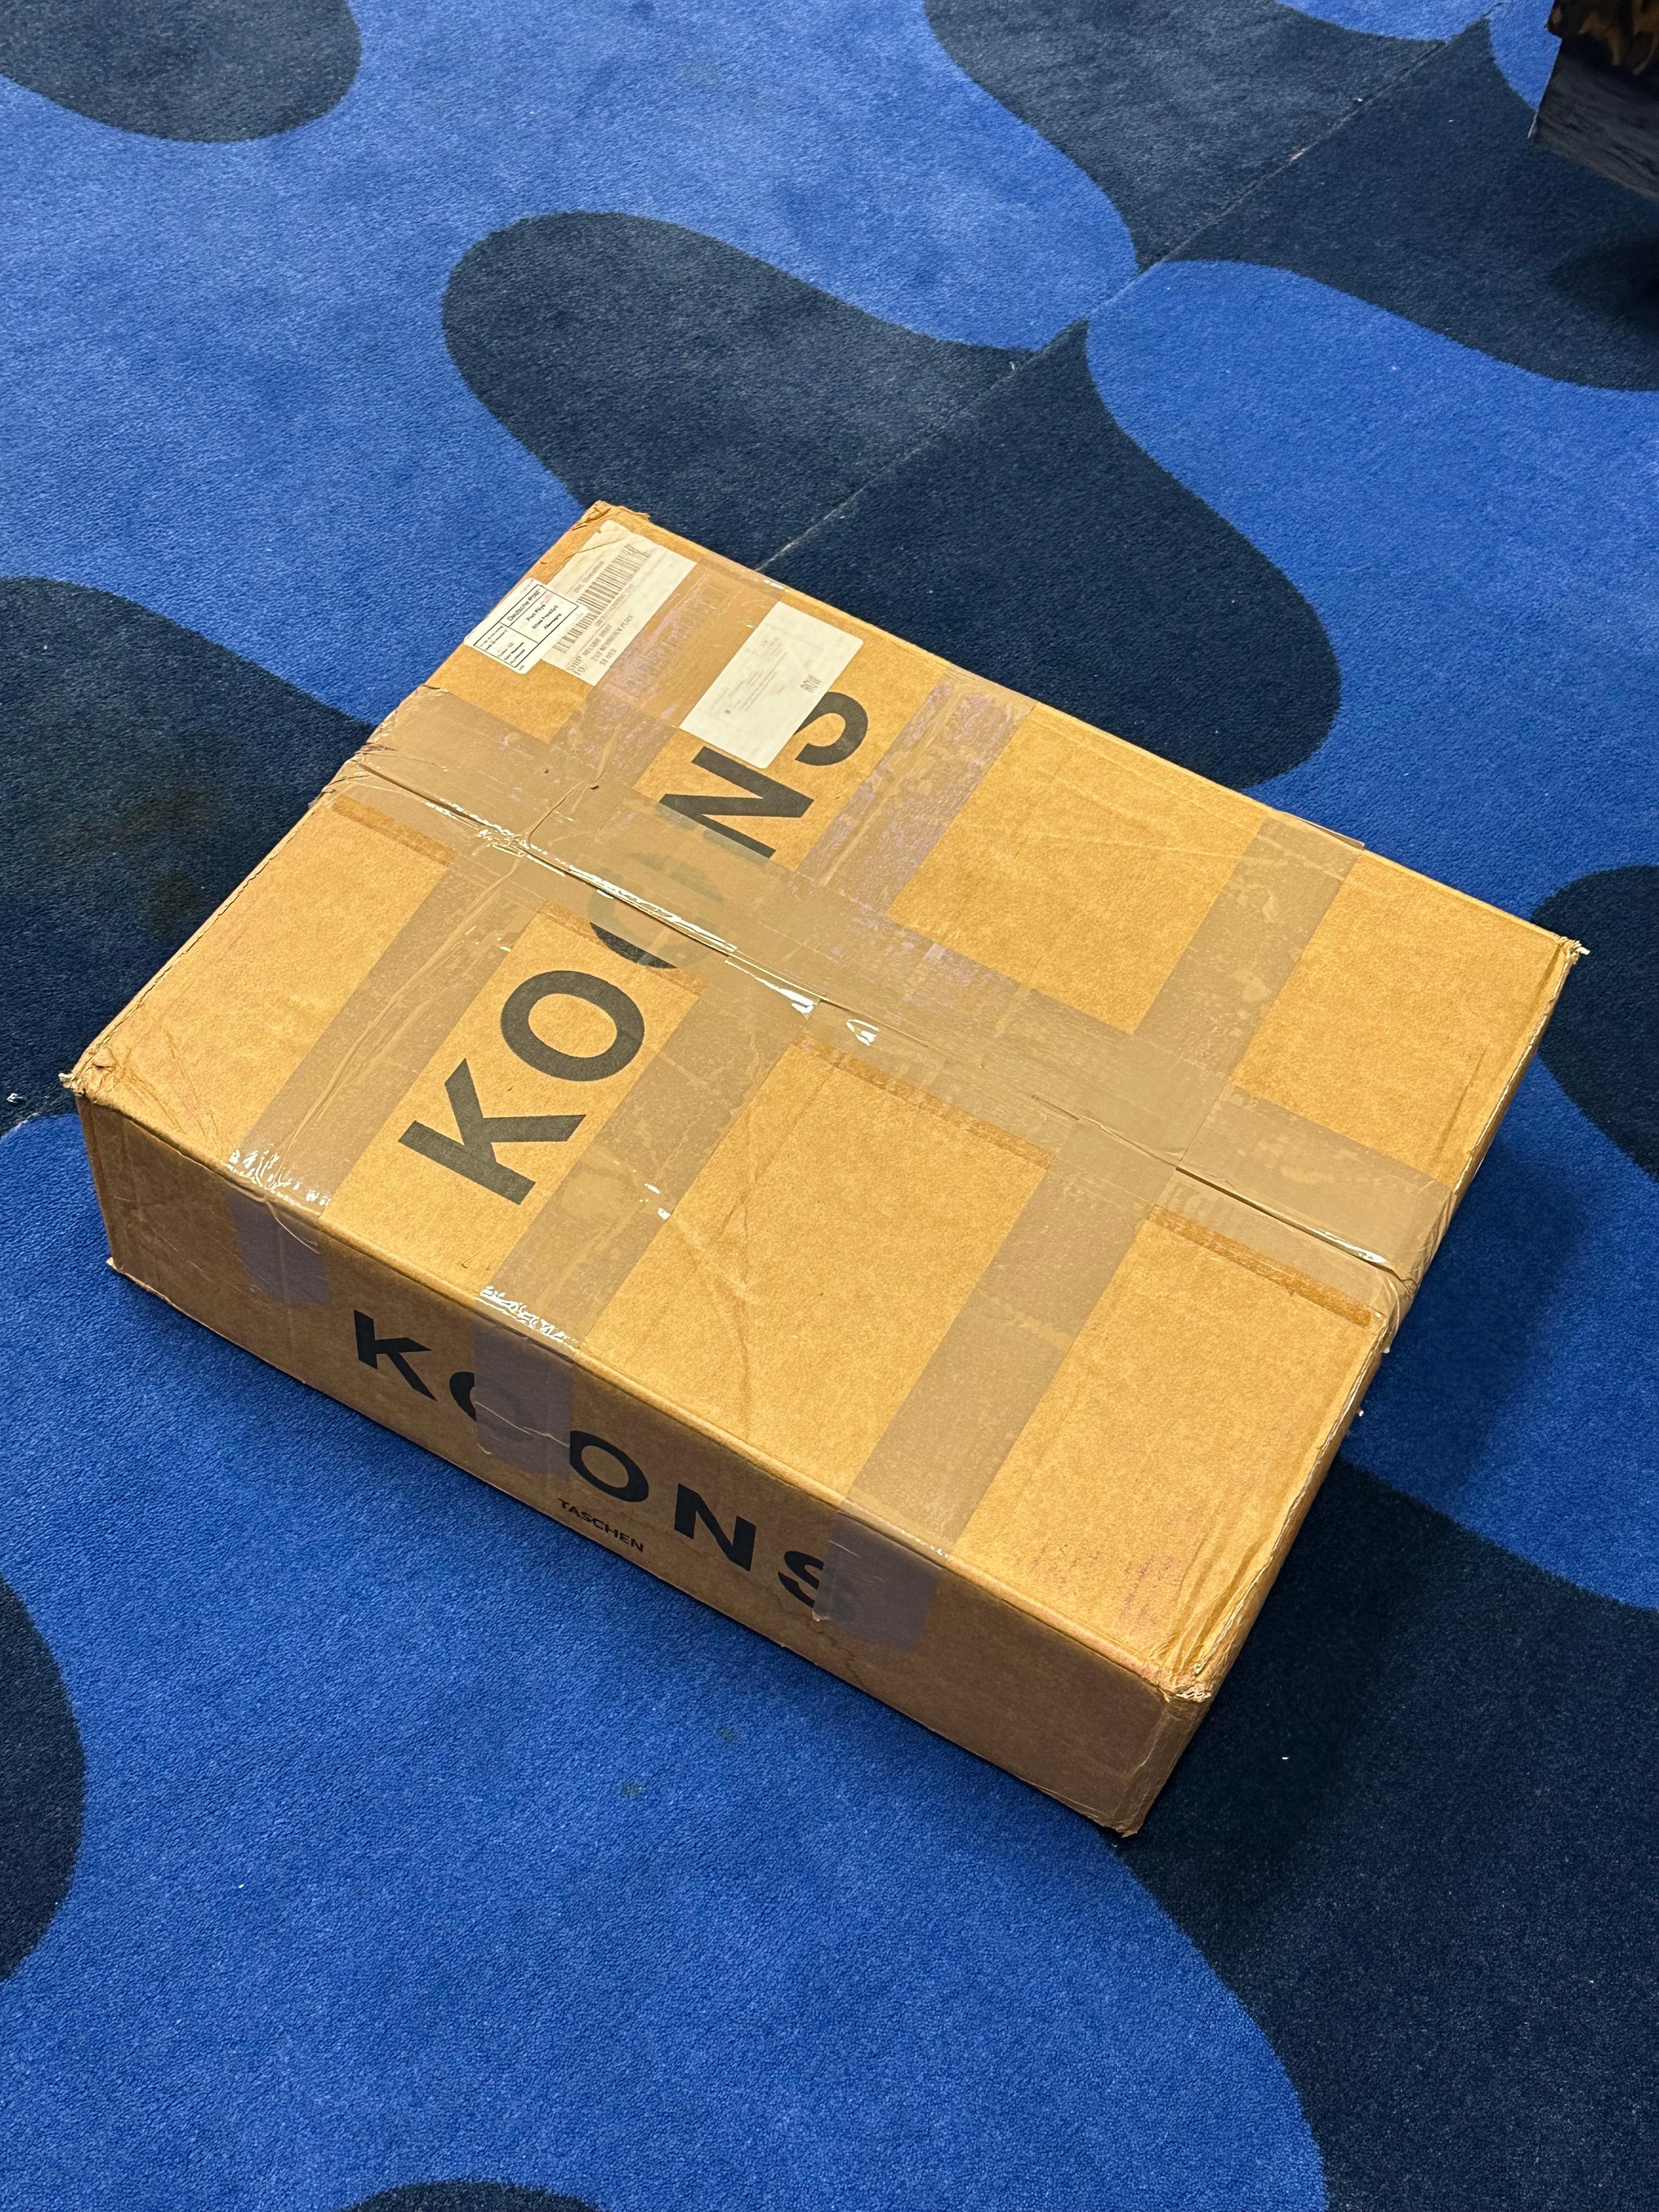 Jeff Koons
2007
#199/1500
Hardcover in Klappschachtel
33 x 44 cm / 17 3/8 x 13 Zoll
606 Seiten

Herausgegeben von Taschen
Limitierte Collector's Edition von 1.500 Exemplaren, nummeriert und signiert von Jeff Koons

In ausgezeichnetem, unberührtem